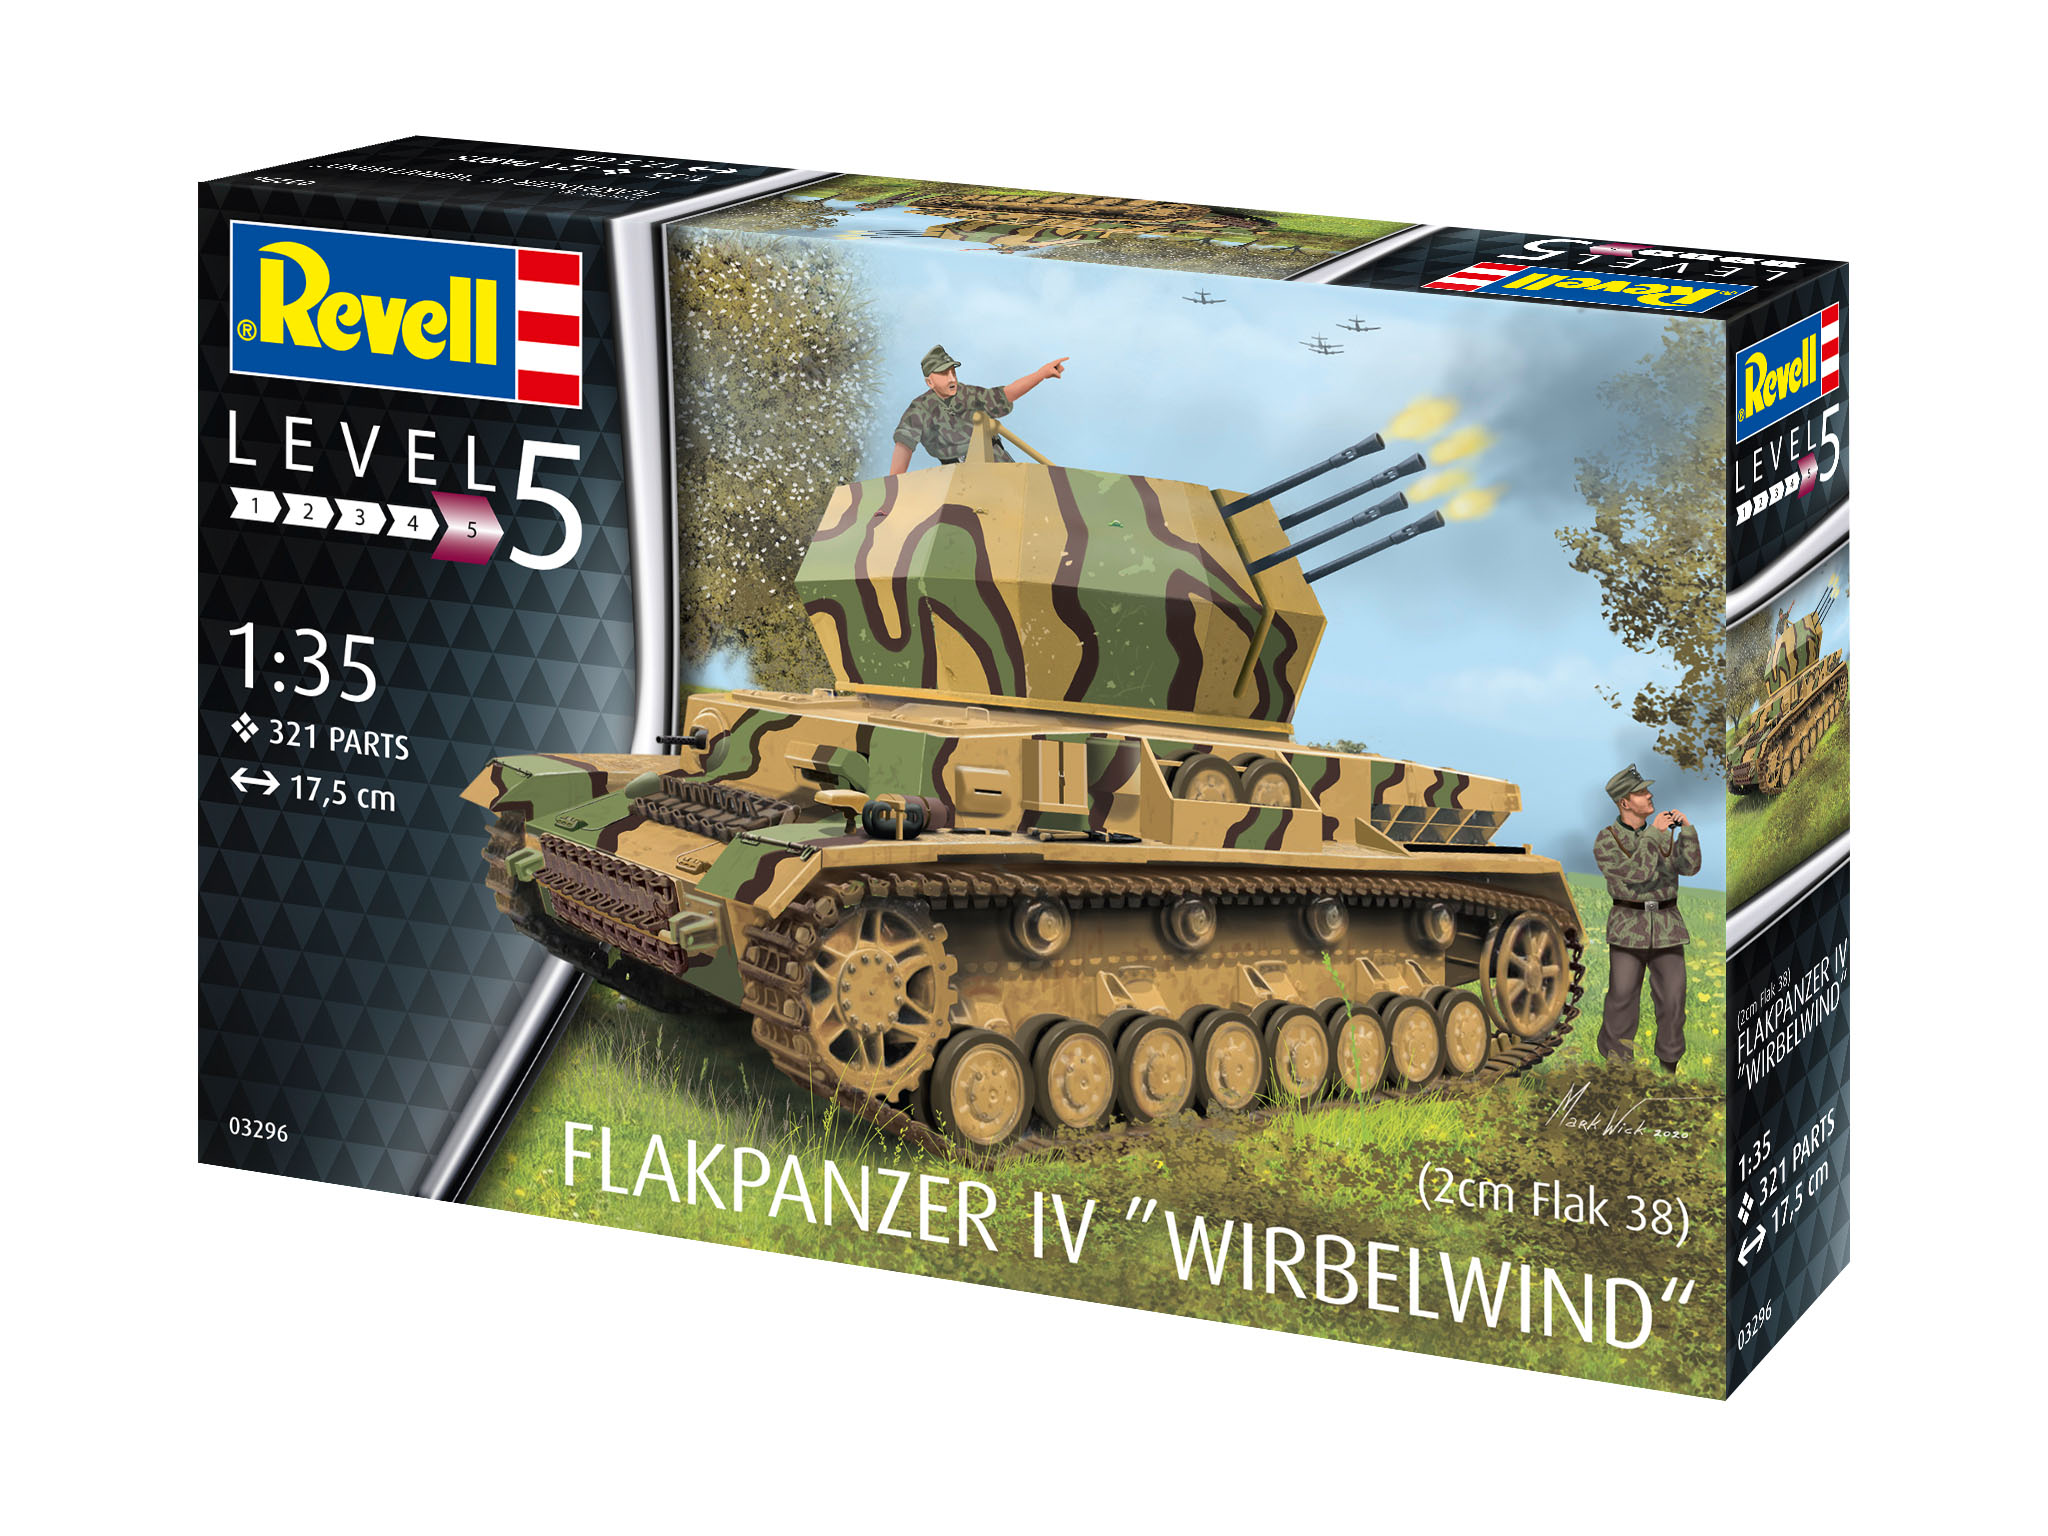 Flakpanzer IV Wirbelwind - 03296